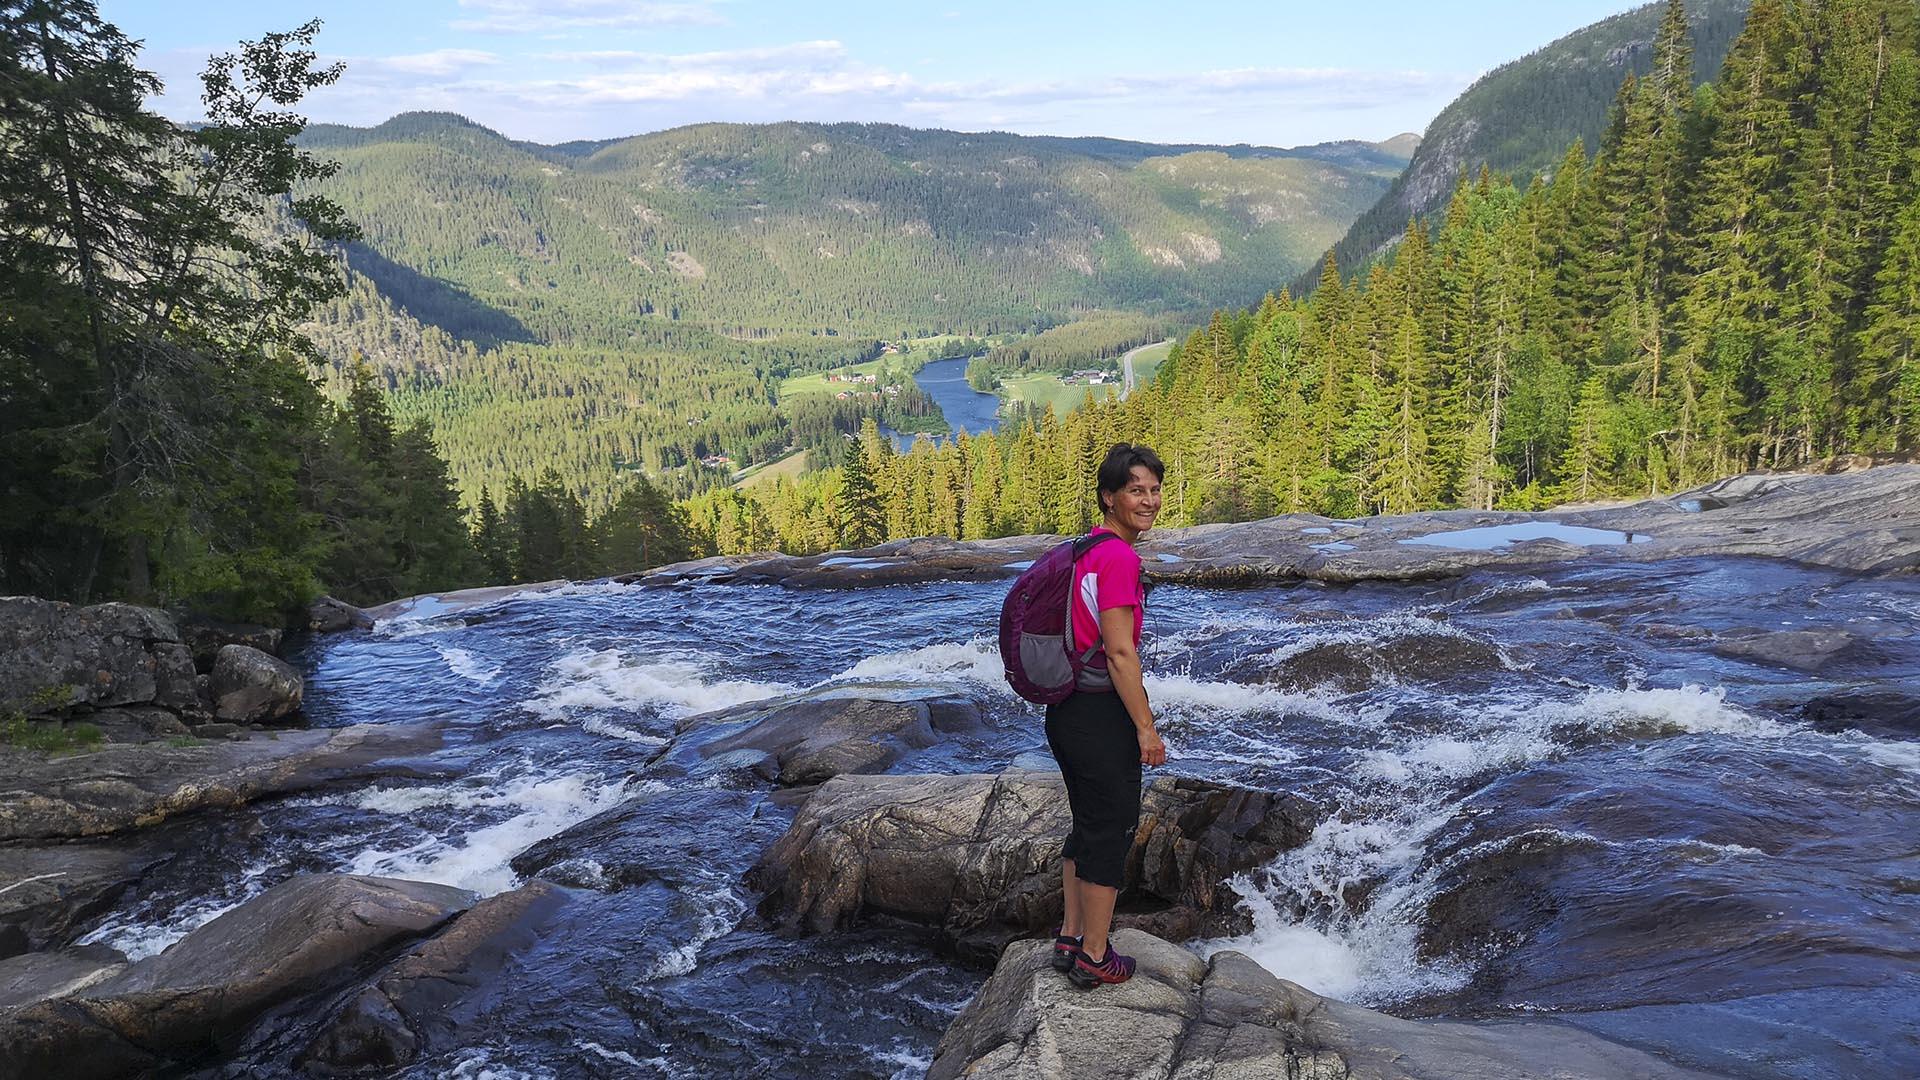 Eine Wanderin mit Tagesrucksack steht auf einem Stein in einem Fluss, der hinter ihr in einem Easserfall ins Tal verschwindet, welches man tief unten im Hintergrund mit einem großen Fluss und Wäldern sieht.